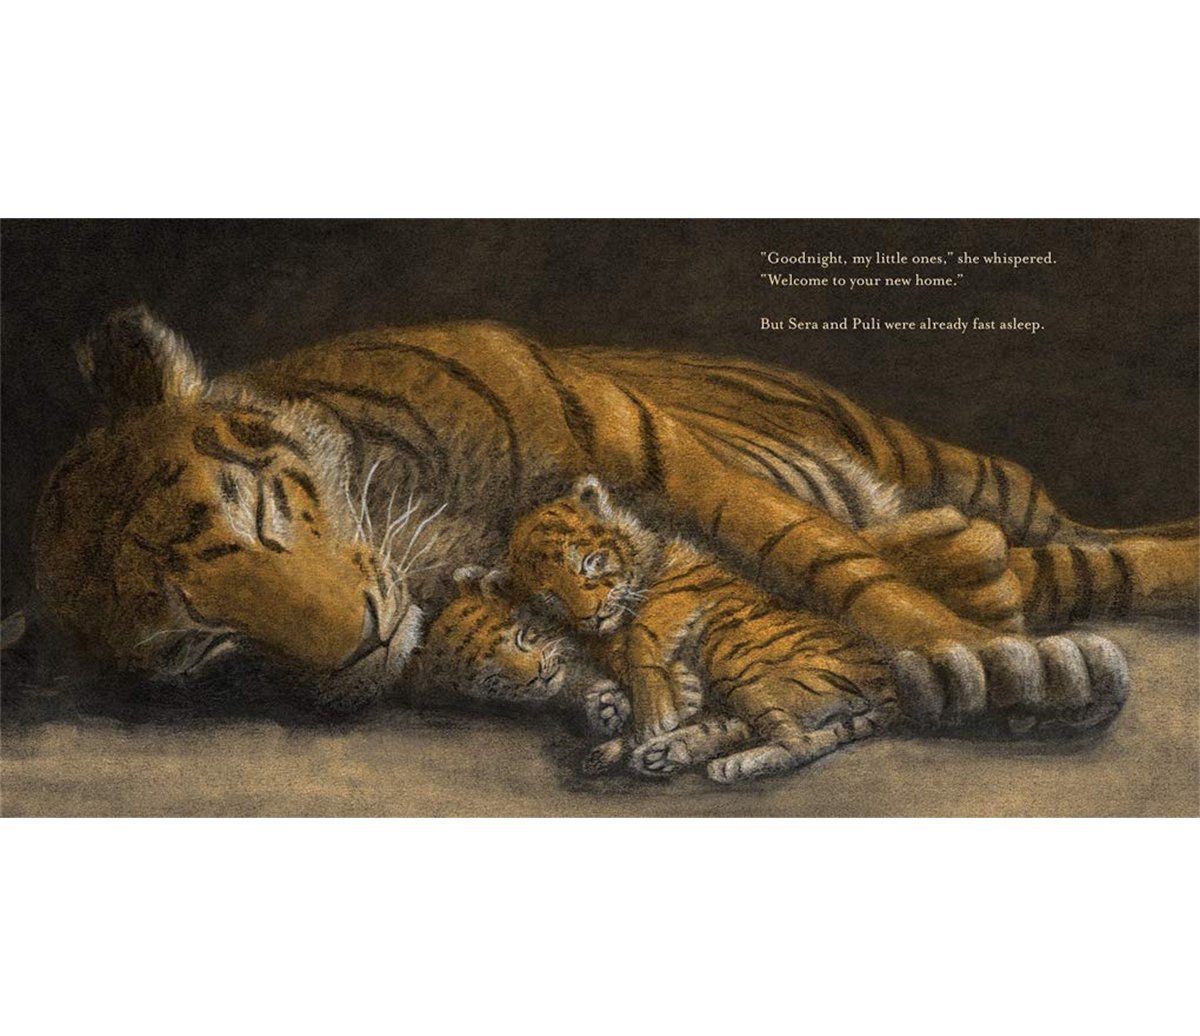 jo-weaver-tigers-sleeping.jpg